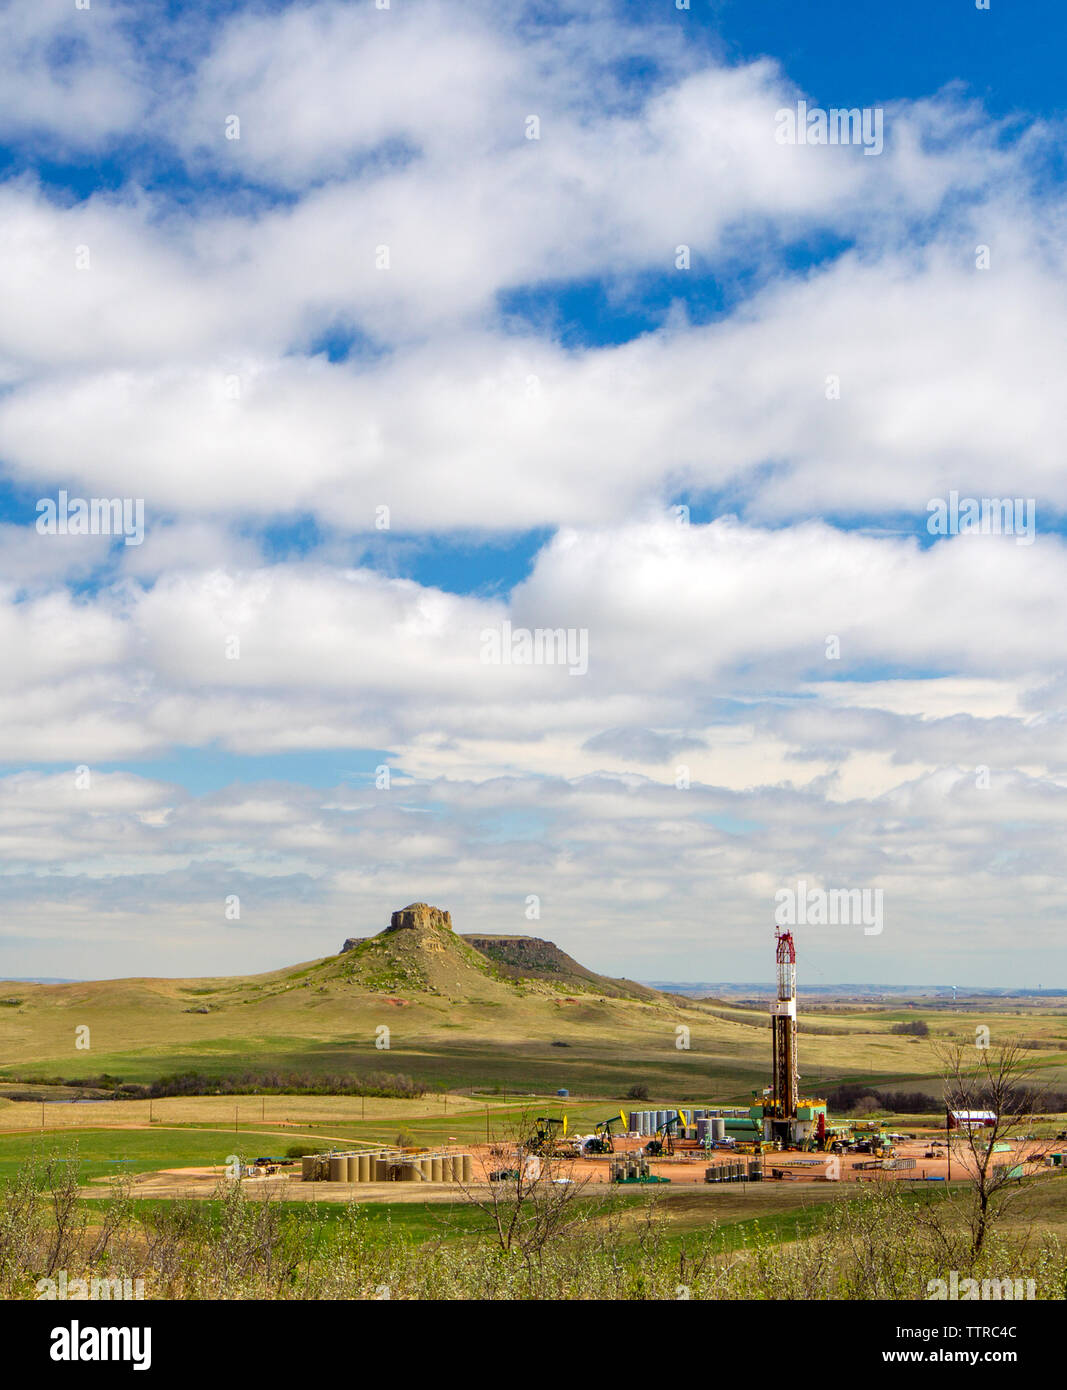 La plate-forme de production de l'huile sur le terrain contre ciel nuageux Banque D'Images